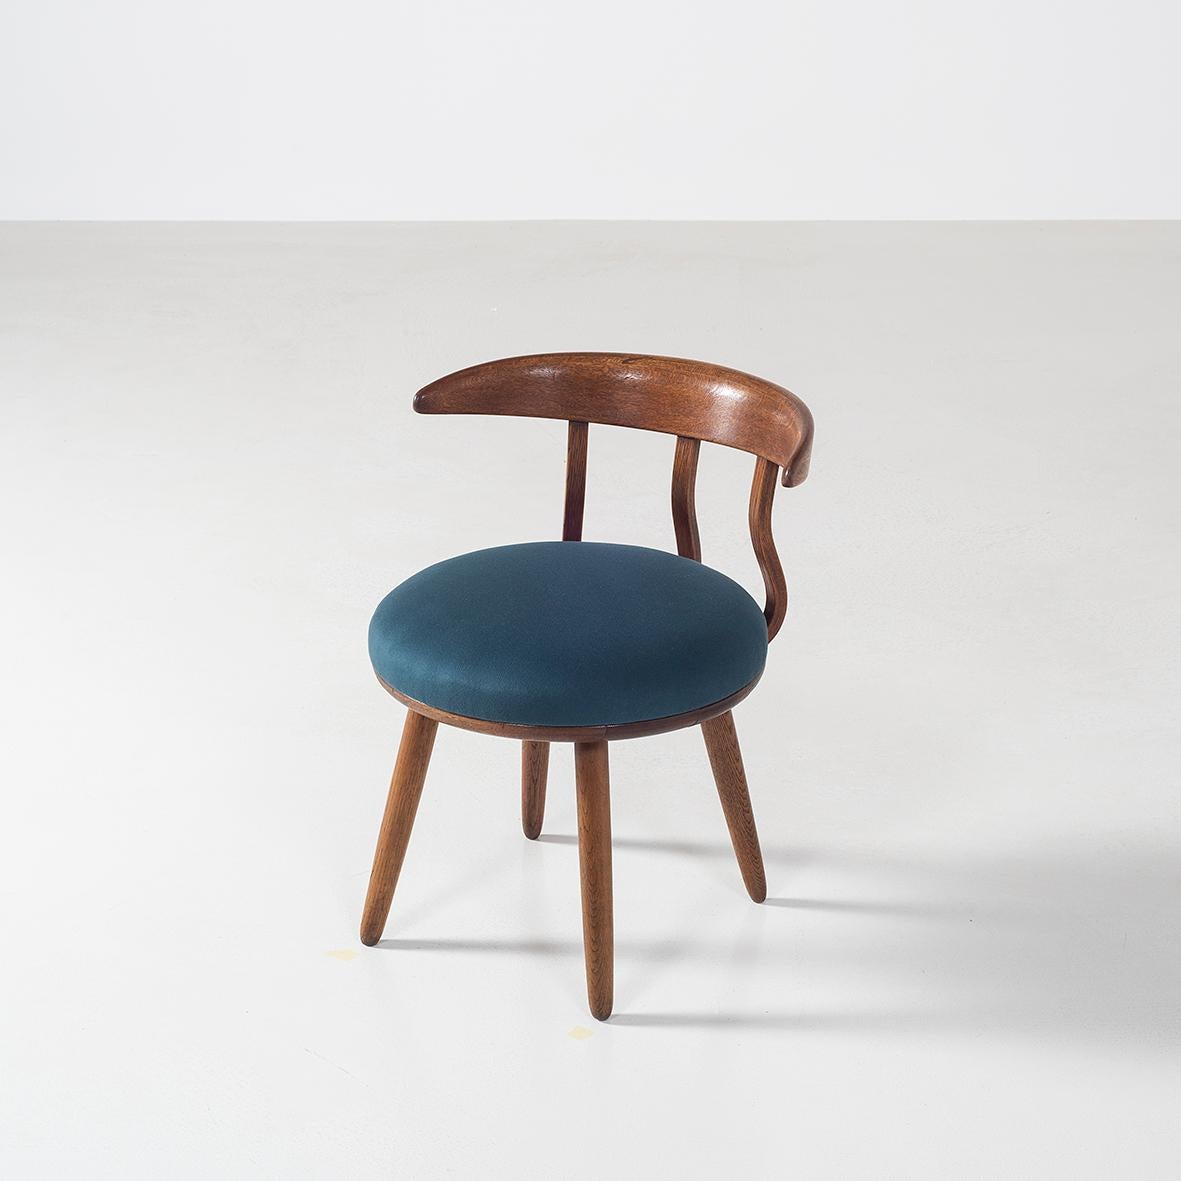 Cet ensemble unique de 5 chaises a été conçu par Isamu Kenmochi dans les années 1950.
Cette version de la chaise pourrait être un prototype de la chaise éditée en 1951 - avec 5 barreaux - qui est référencée dans la monographie de Kenmochi.
Il a